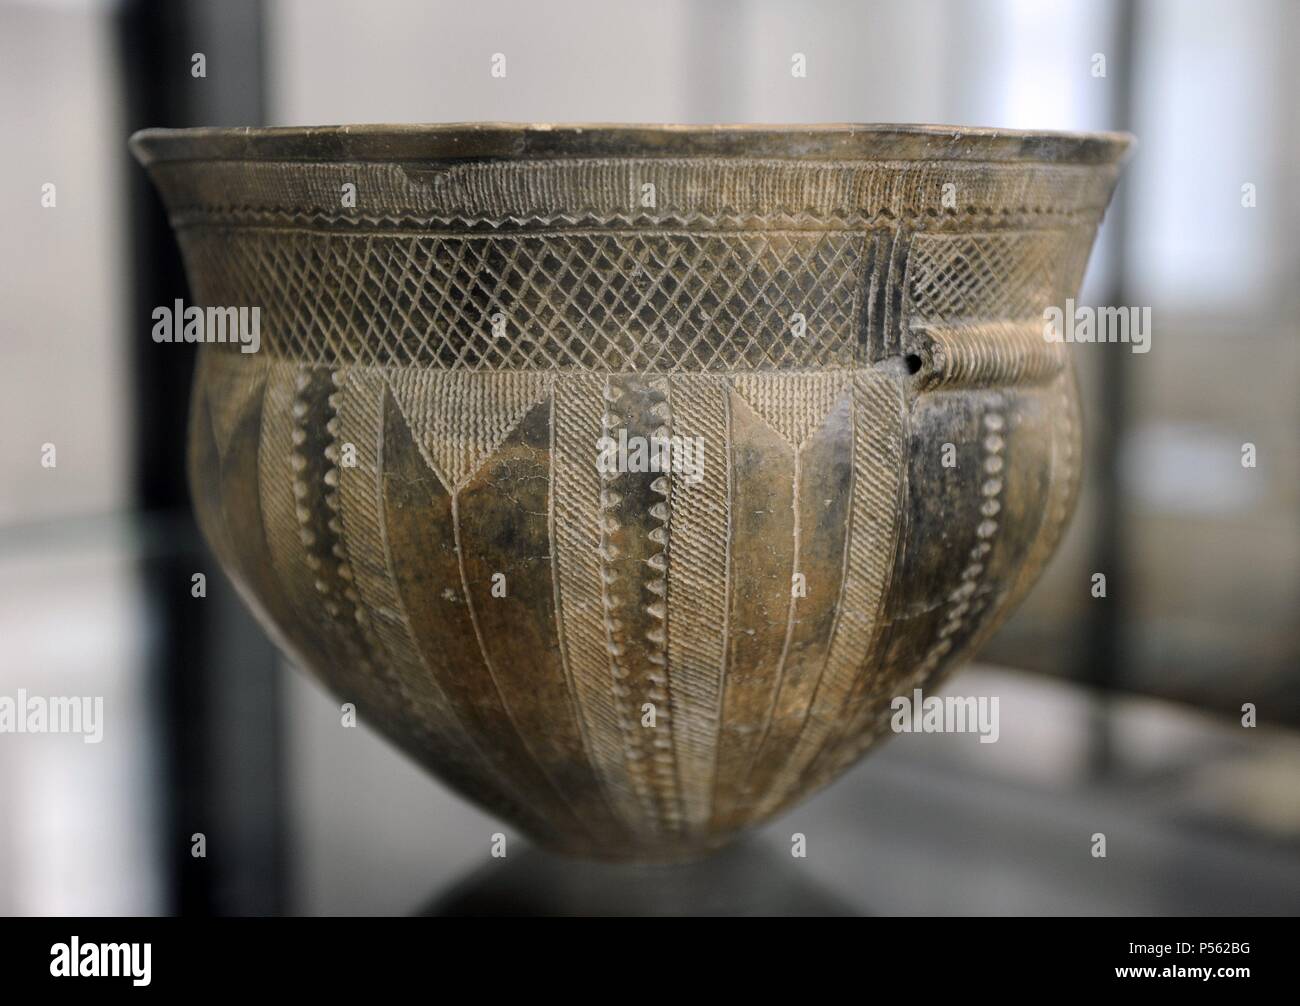 The Skarpsalling Pot. Troldebjerg style. 3200 BC. Neolithic Period. Found near Skarpsalling, Himmerland. National Museum of Denmark. Copenhagen. Denmark. Stock Photo